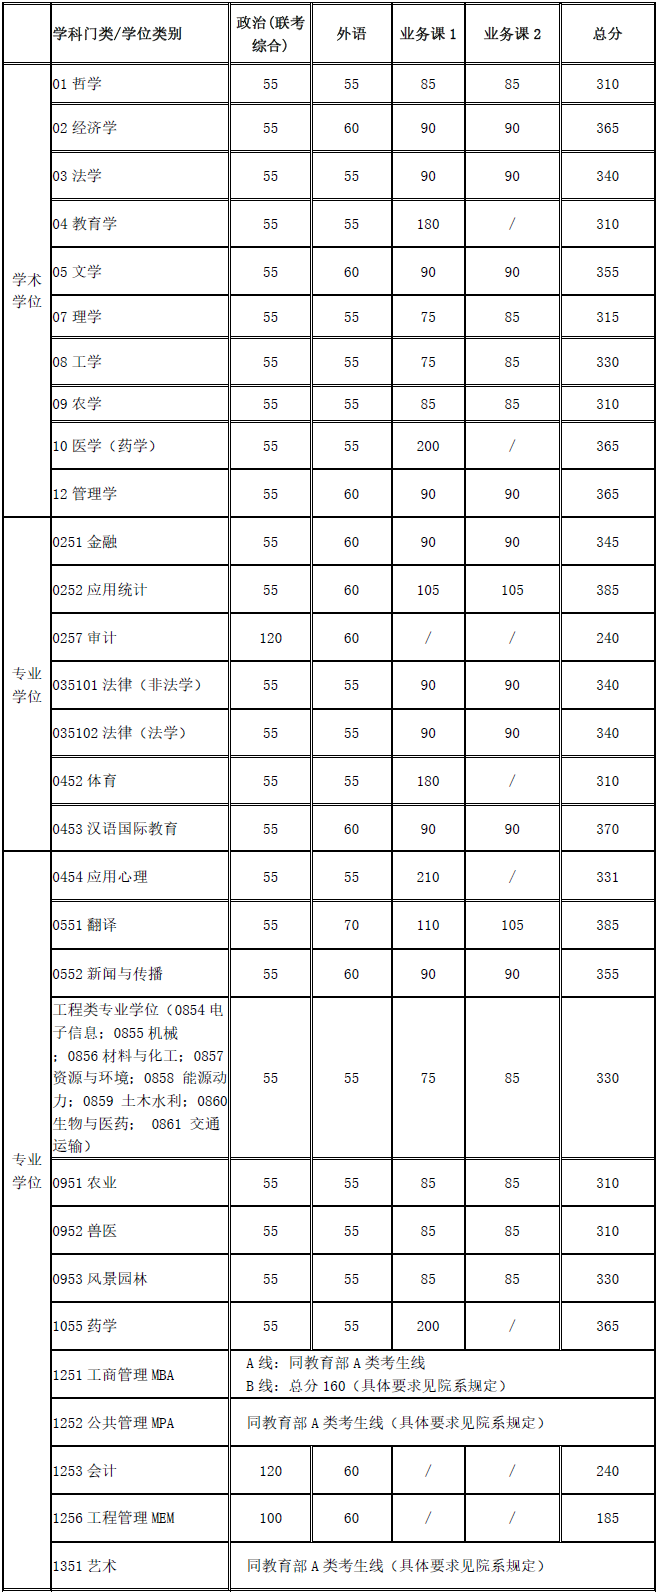 上海交通大学2020考研复试基本分数线